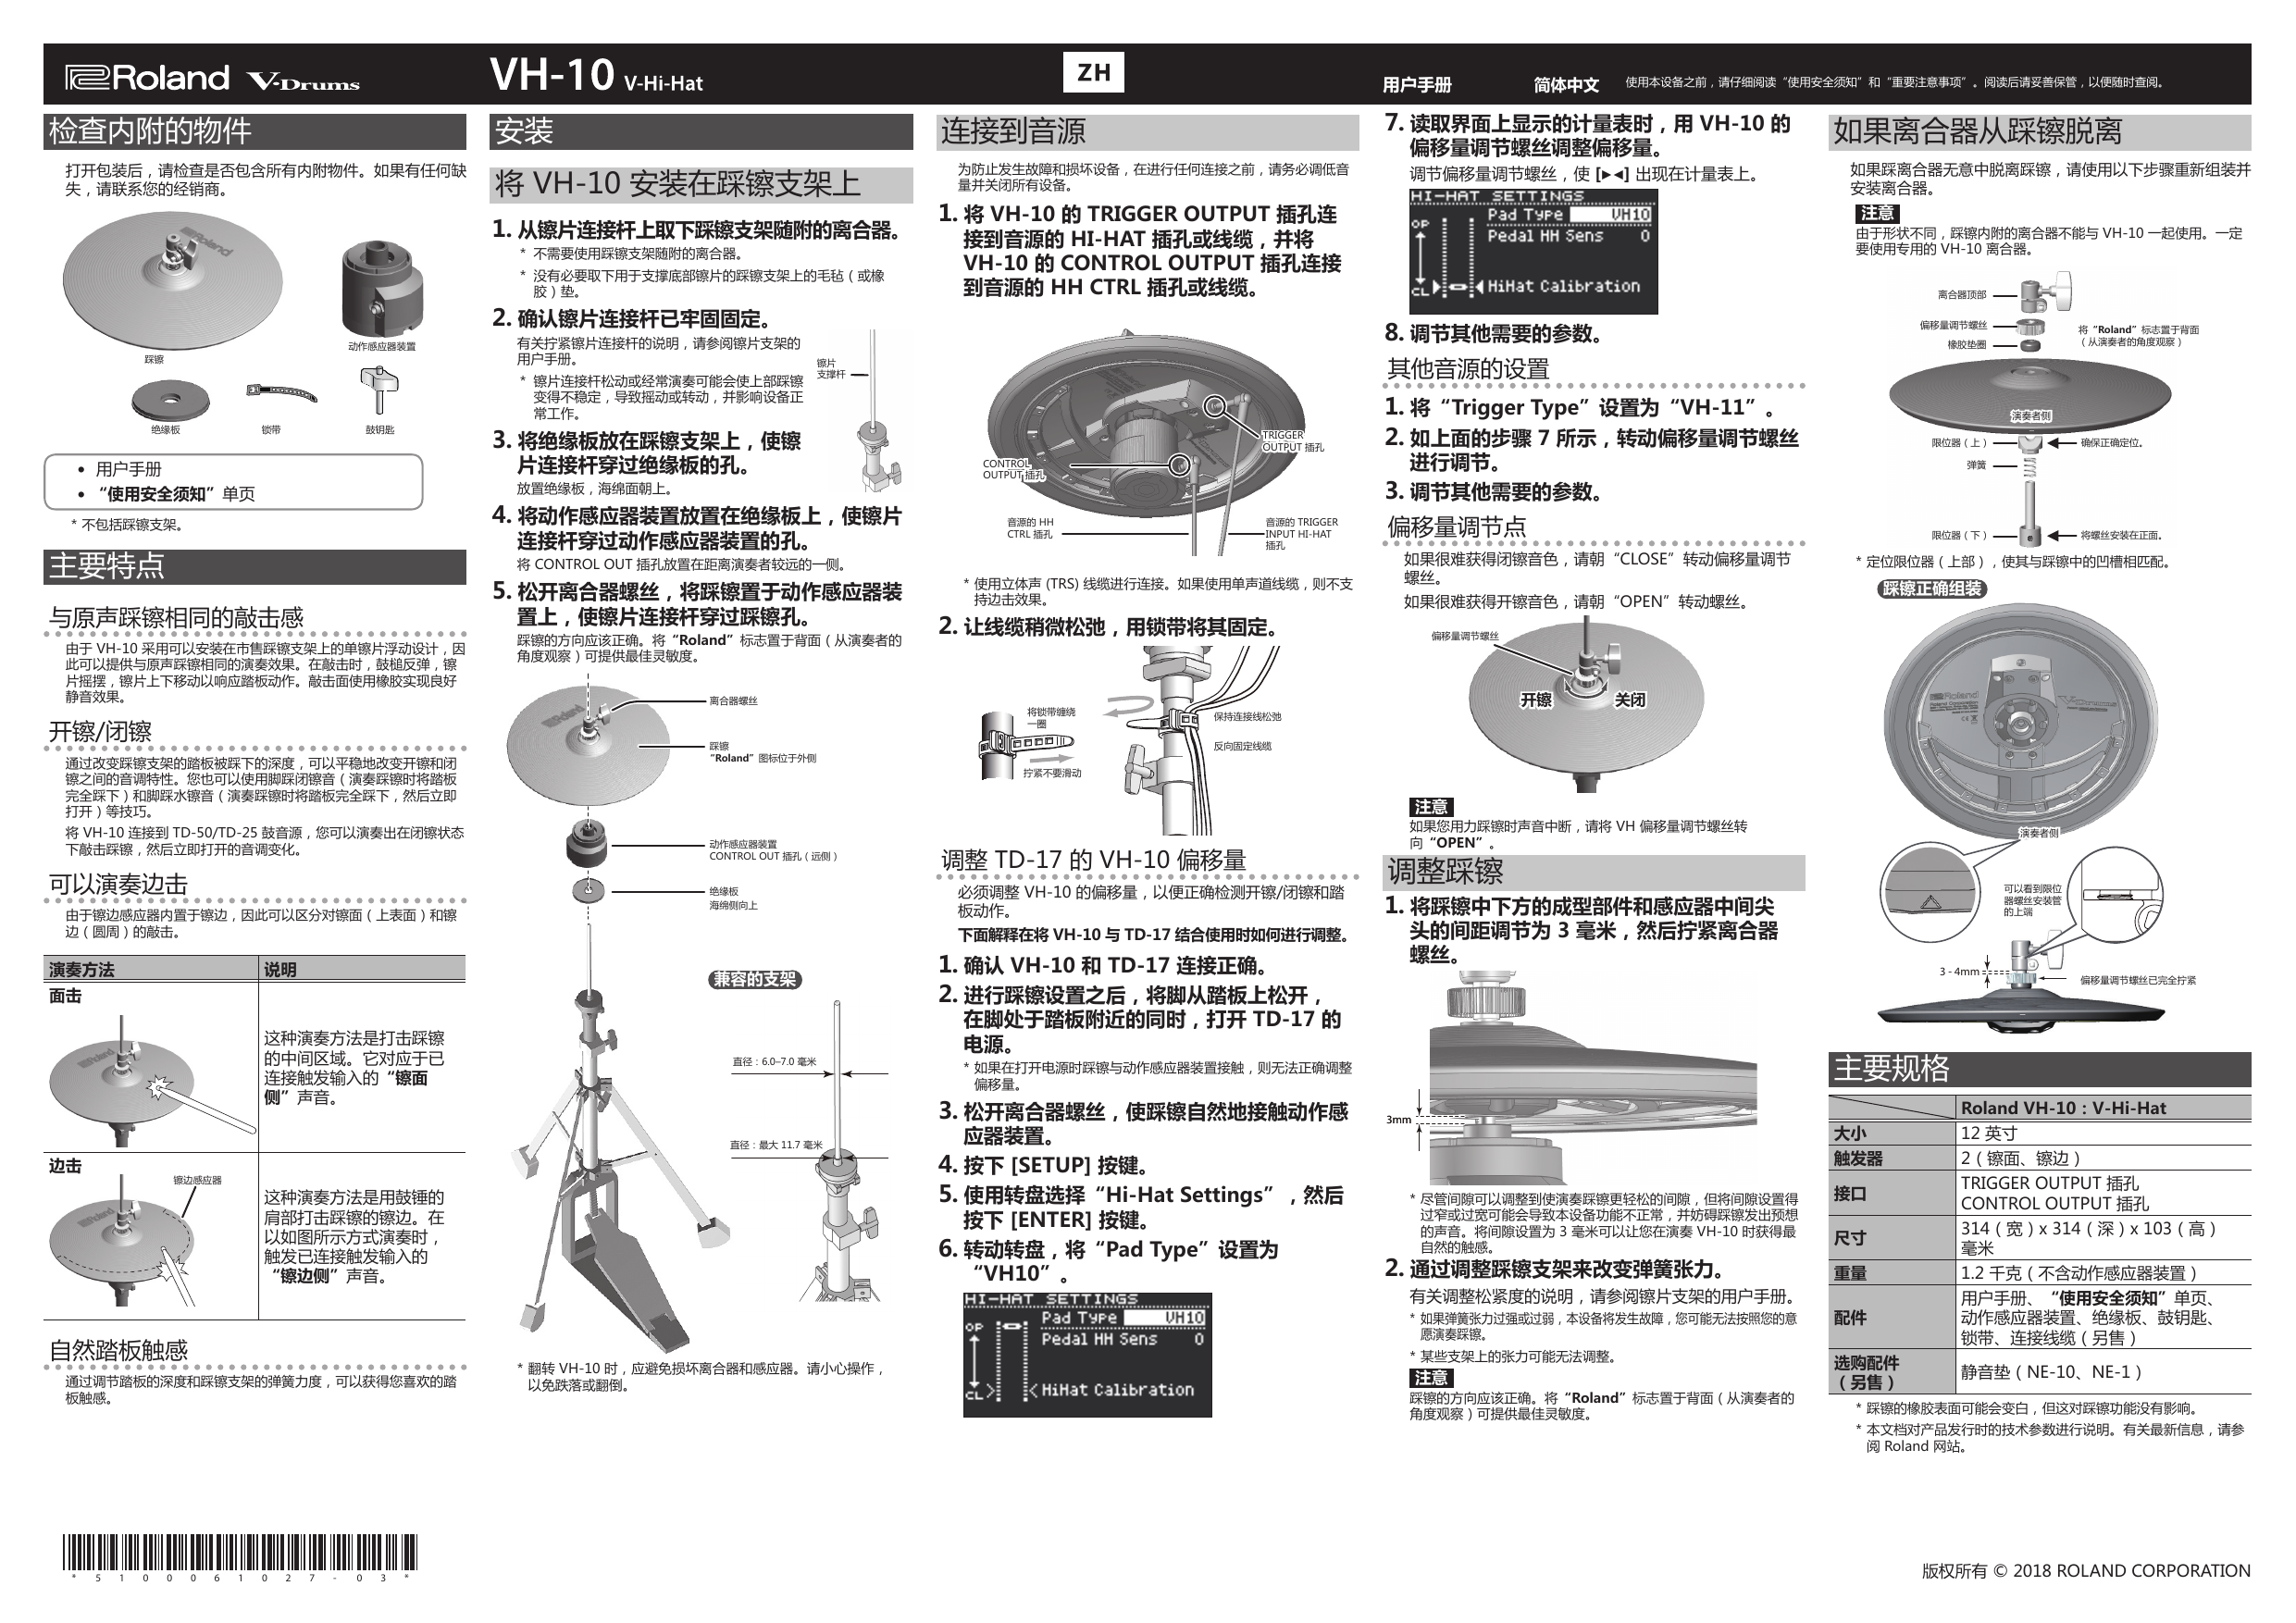 Roland VH-10 V-Hi-Hat Owner's manual | Manualzz